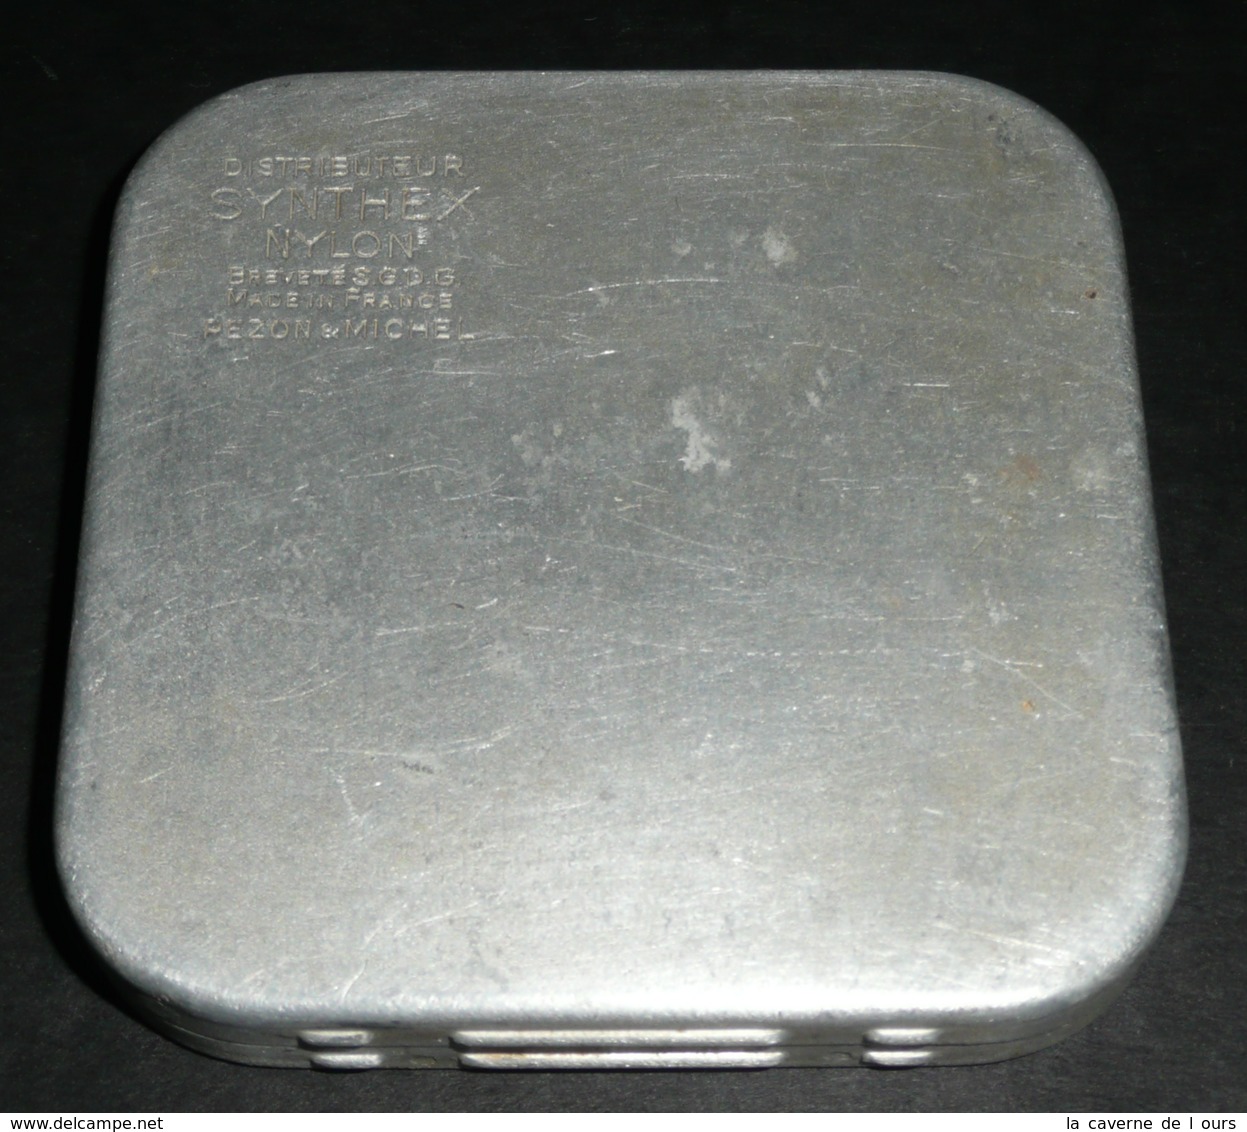 Rare Ancienne Boite En Aluminium Alu, Publicitaire, Distributeur SYNTHEX Nylon, Bté SGDG France Pezon & Michel, Pêche - Boxes